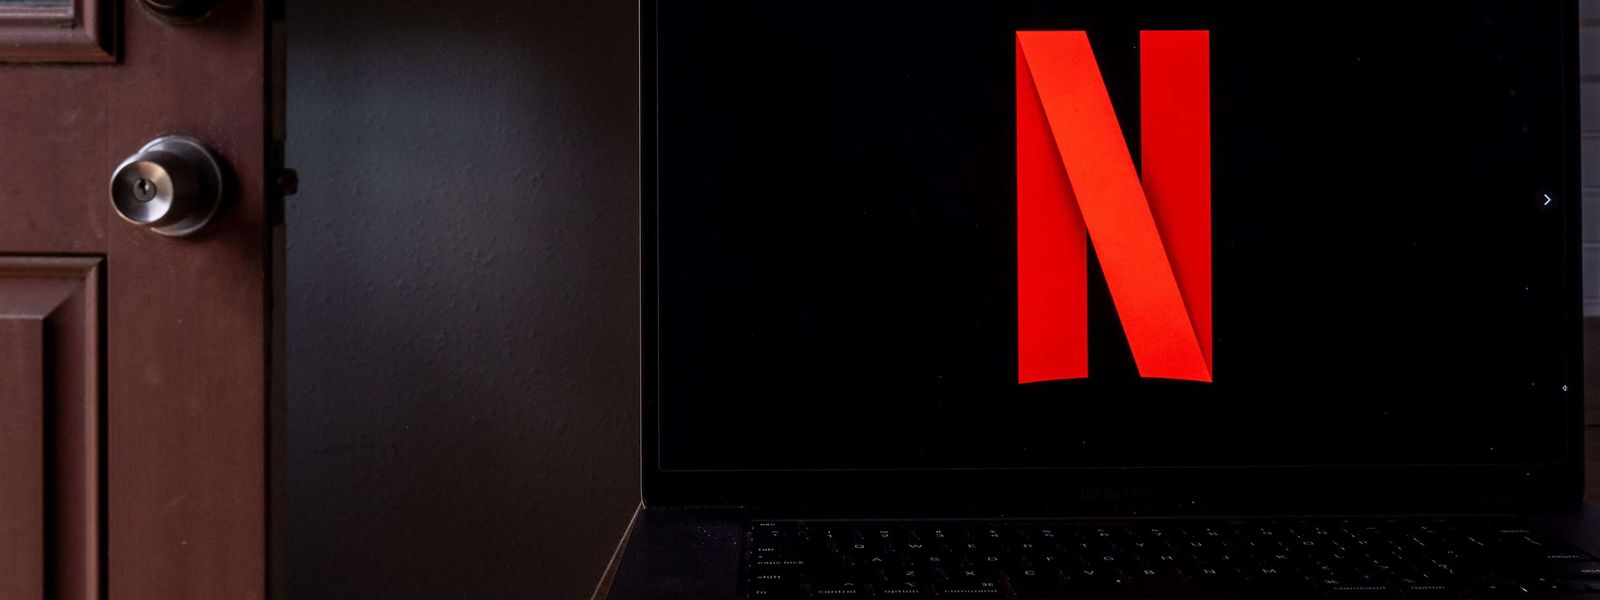 En tout, Netflix a réalisé 7,9 milliards de dollars de chiffre d'affaires de janvier à mars, soit près de 10% de plus qu'il y a un an.